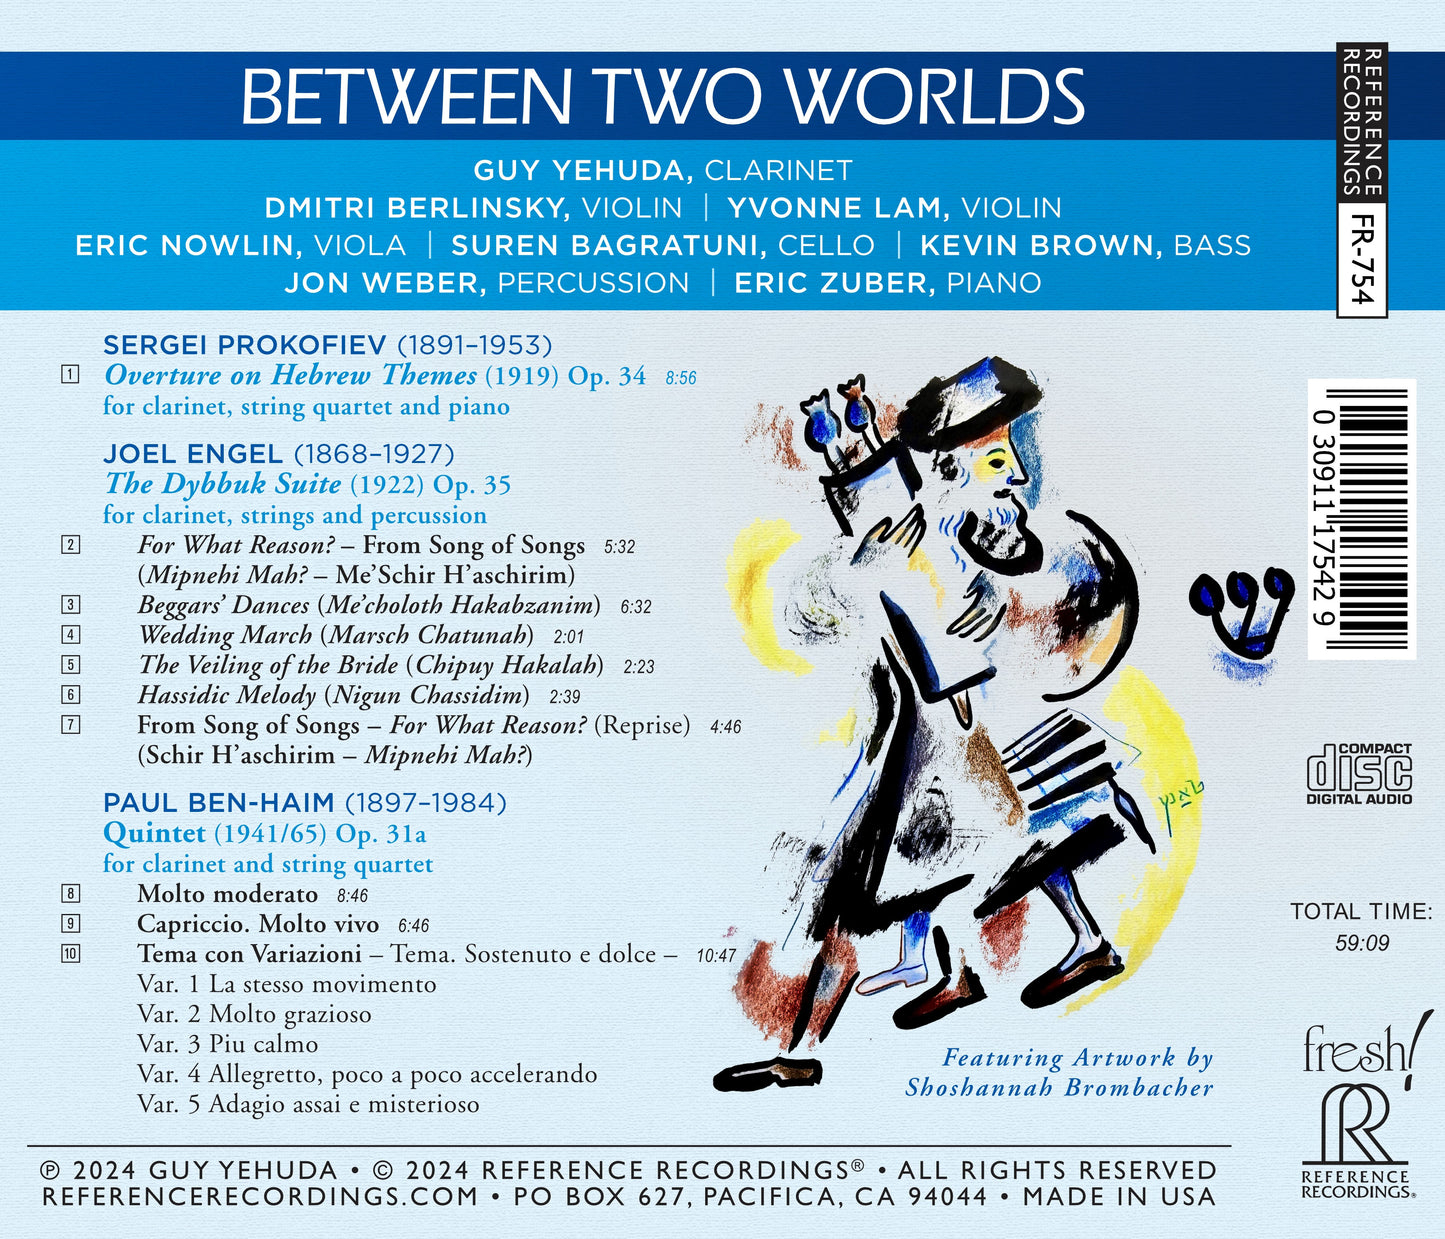 Between Two Worlds - Music of Ben-Haim, Engel & Prokofiev / Yehuda